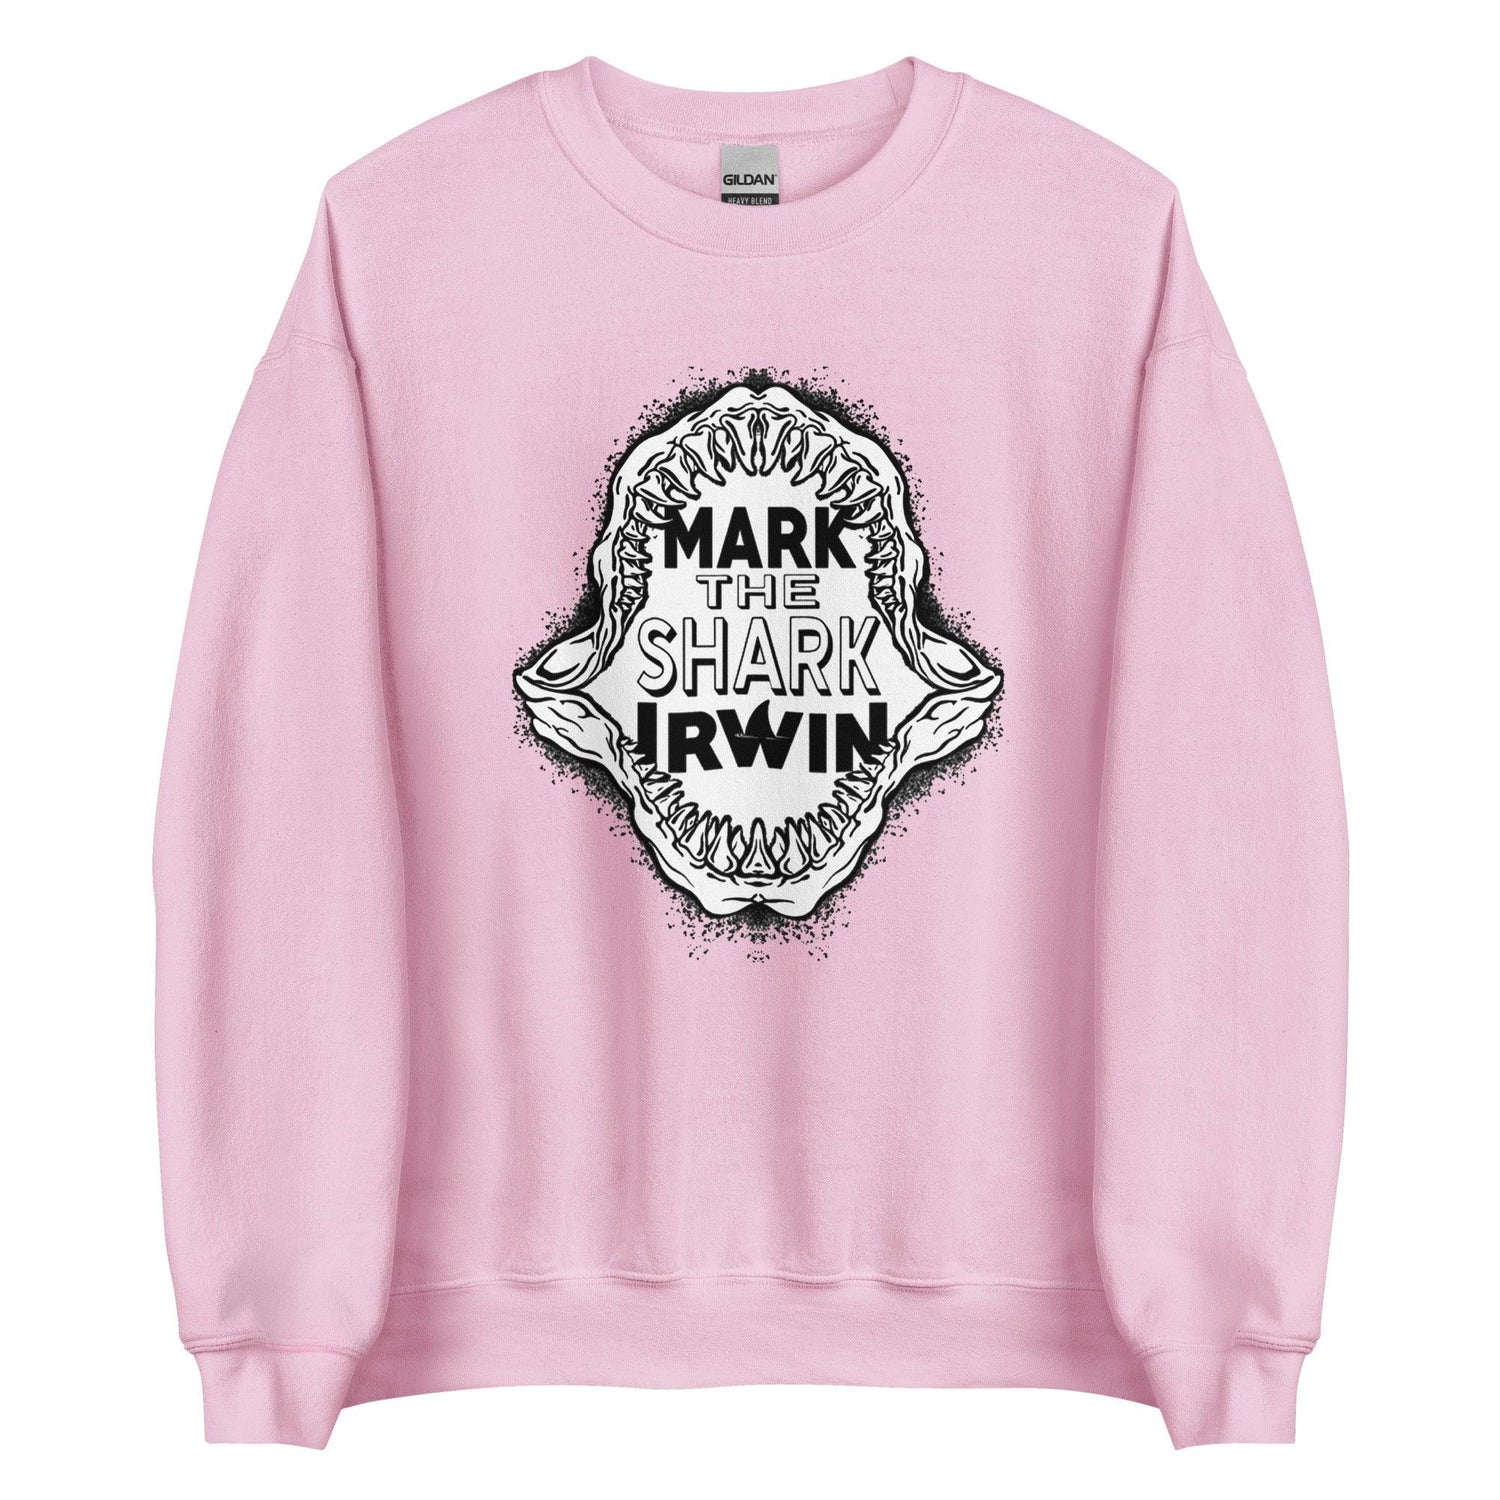 Mark Irwin "The Shark" Sweatshirt - Fan Arch